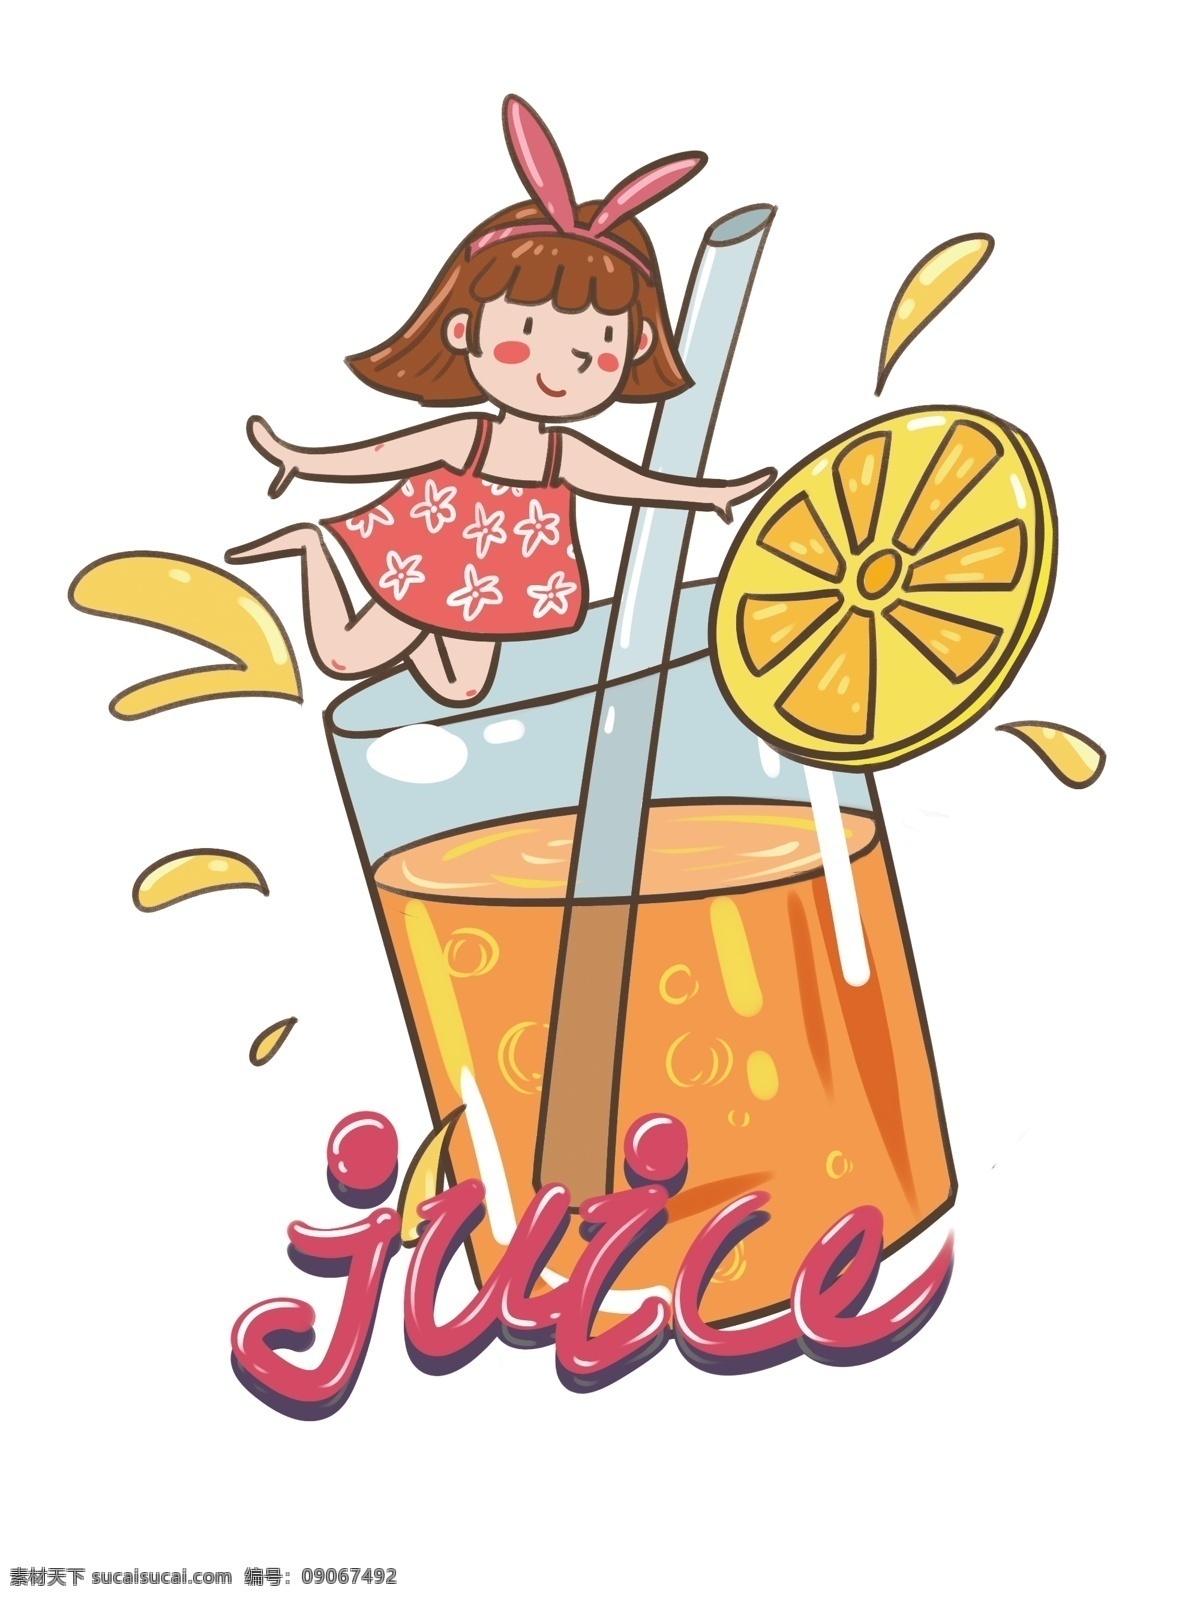 帆布 袋 包装 夏日 冰 爽 系列 橙汁 女孩 可爱 卡通 帆布袋 吸管 简约 小清新